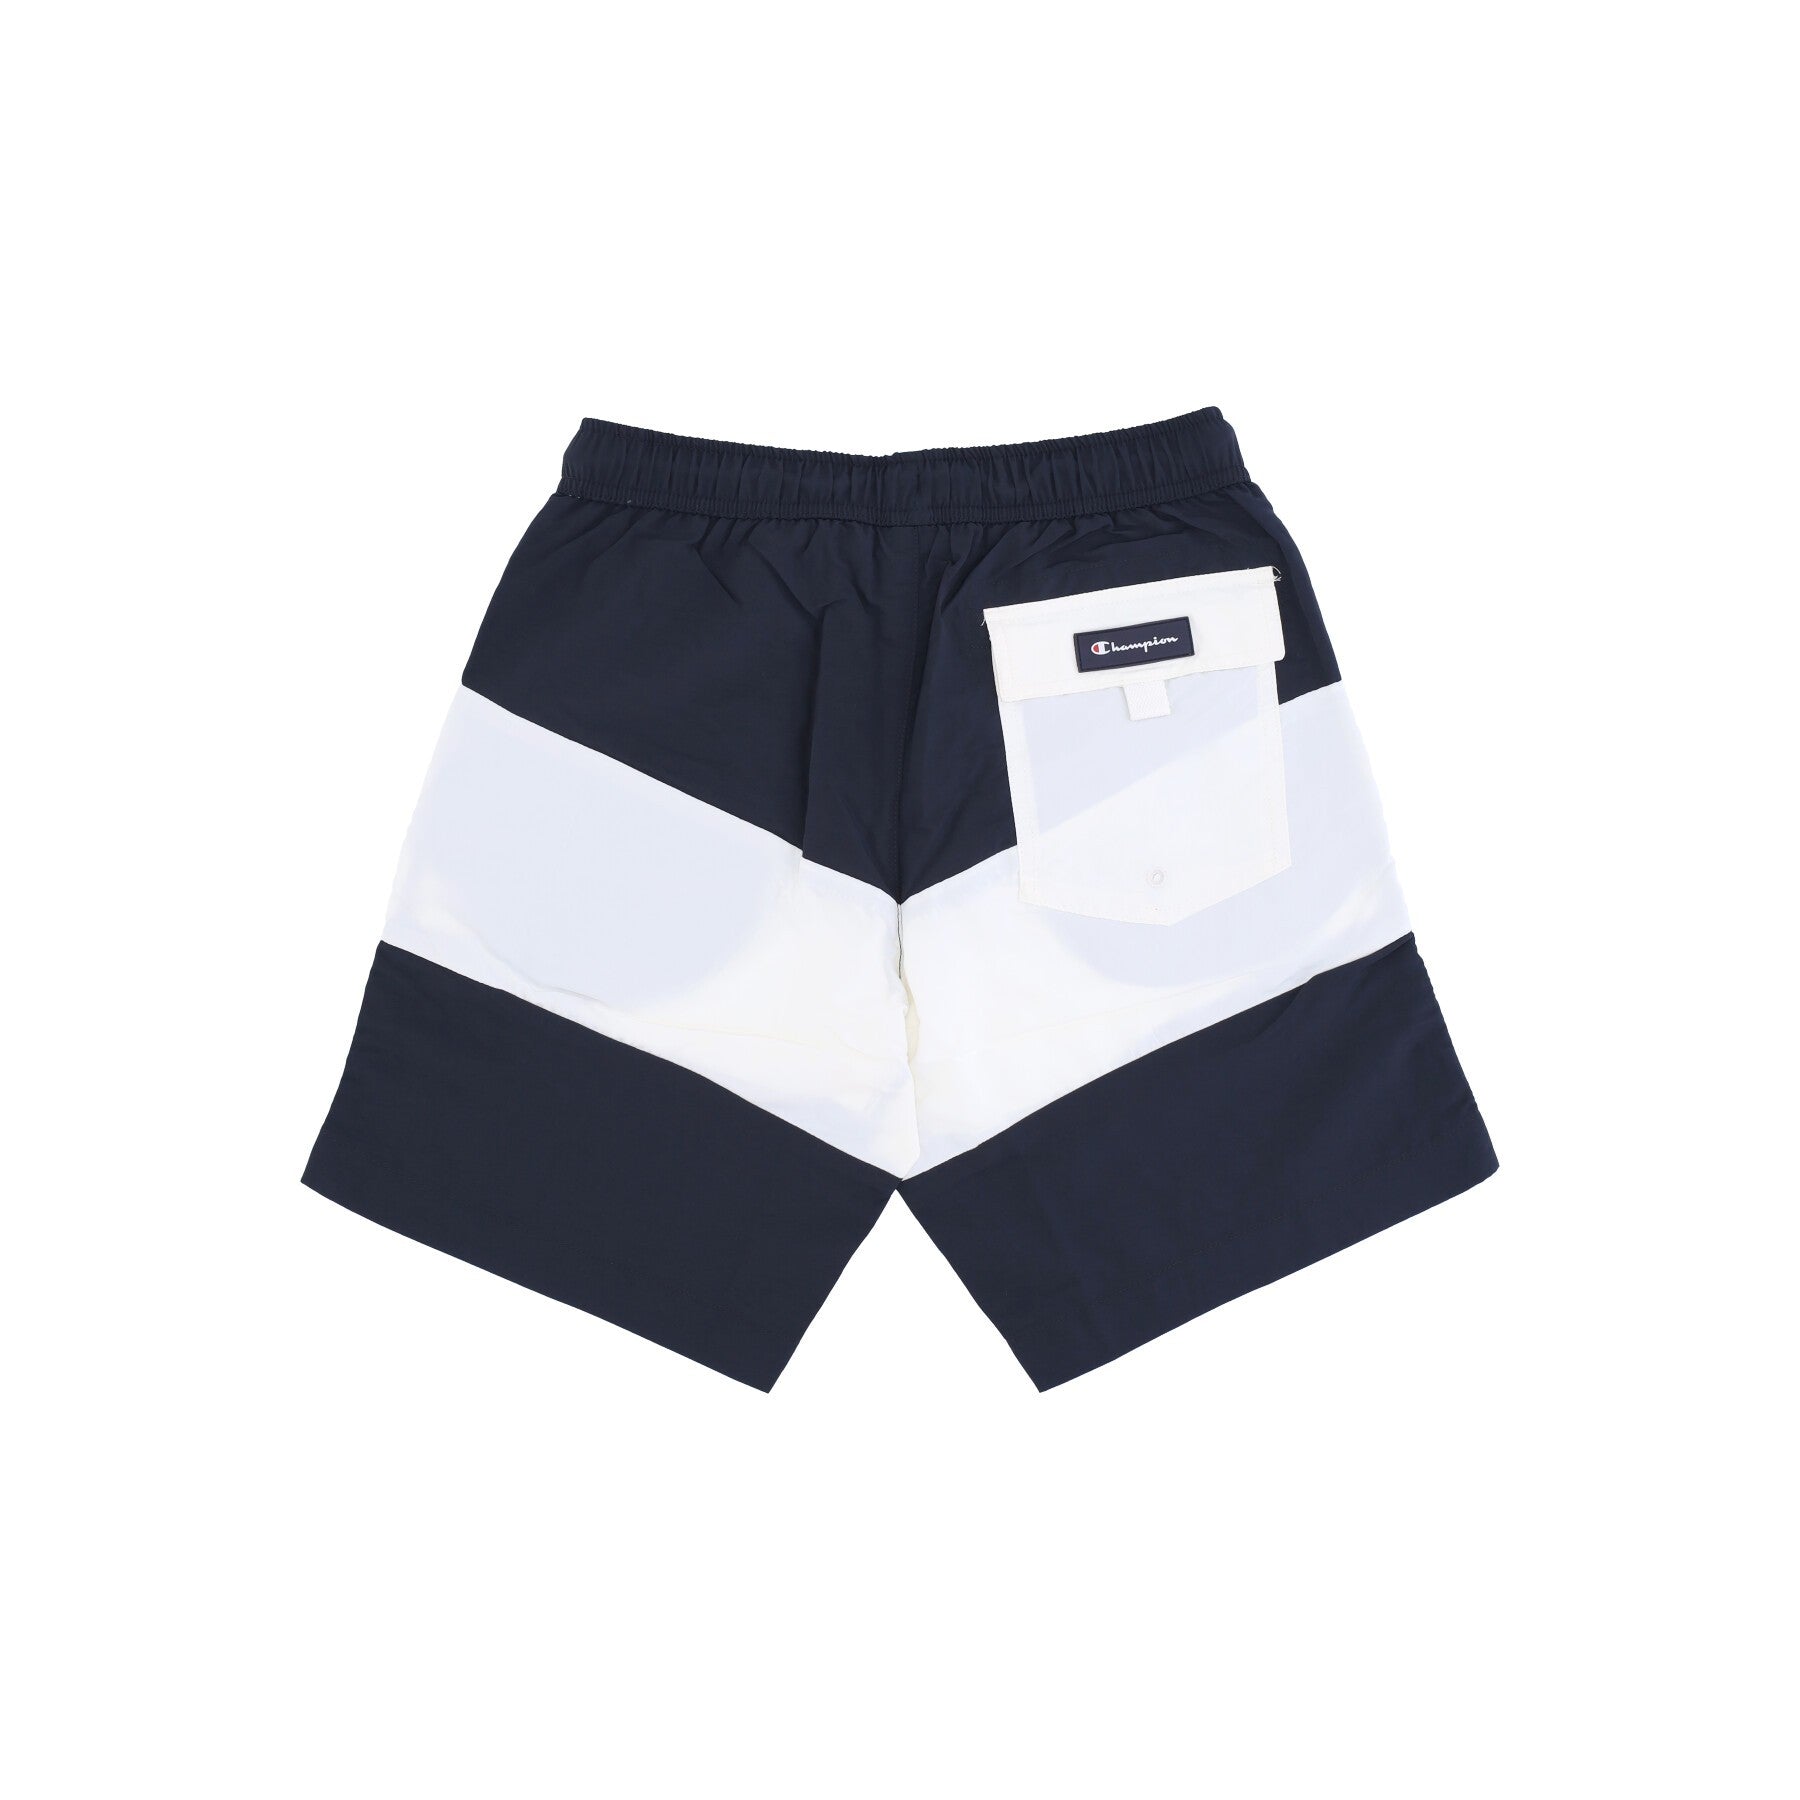 Men's Beachshort Swim Shorts Graphite/white